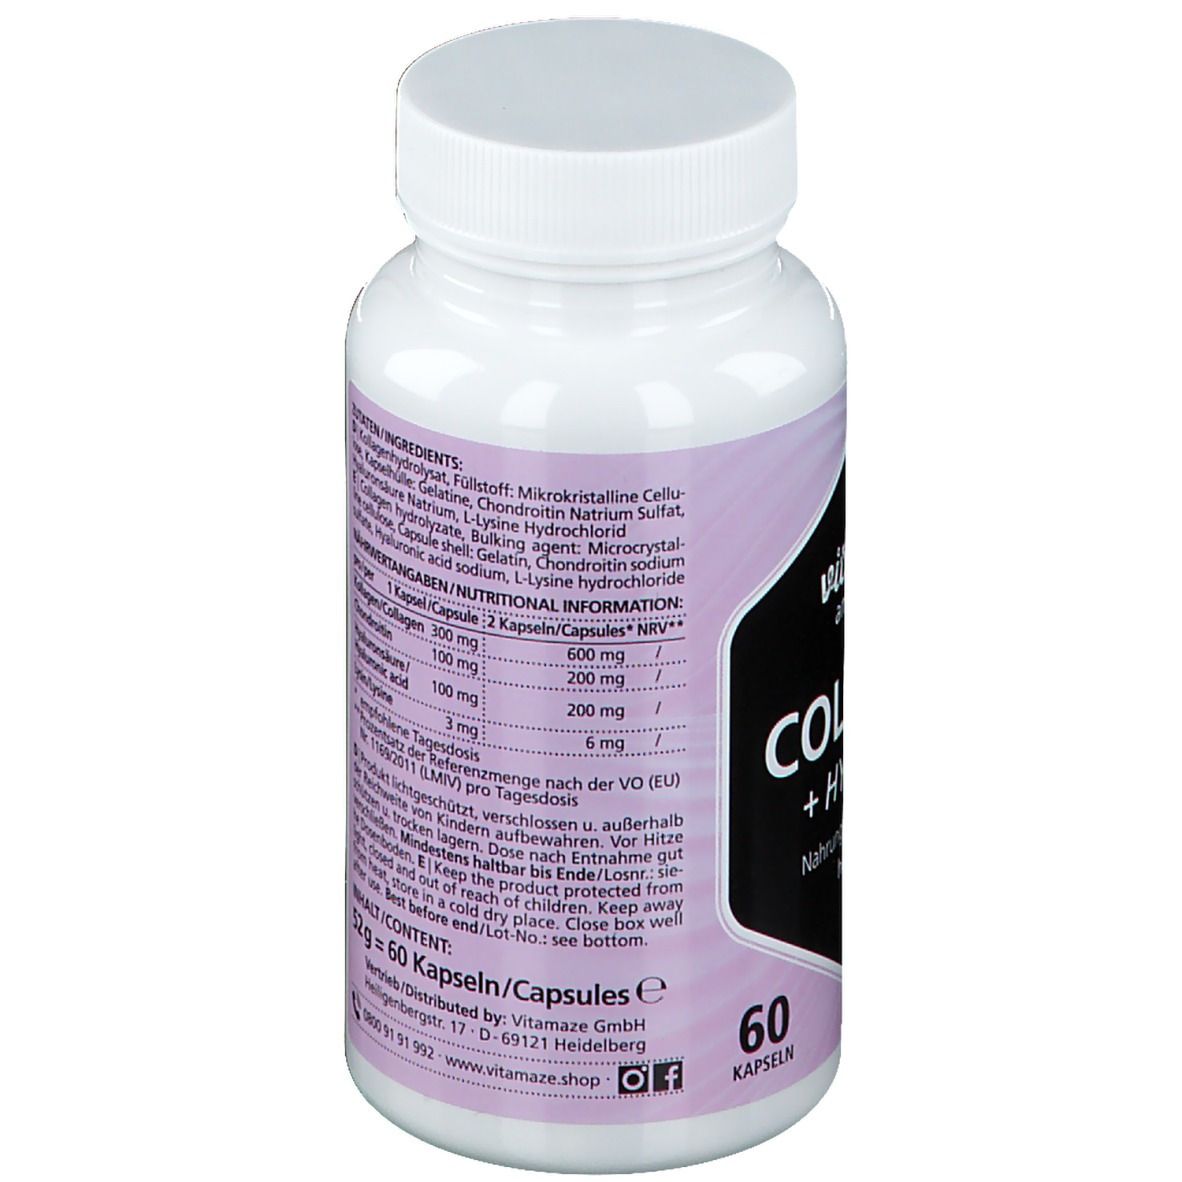 Vitamaze Collagen + Hyaluron hochdosiert